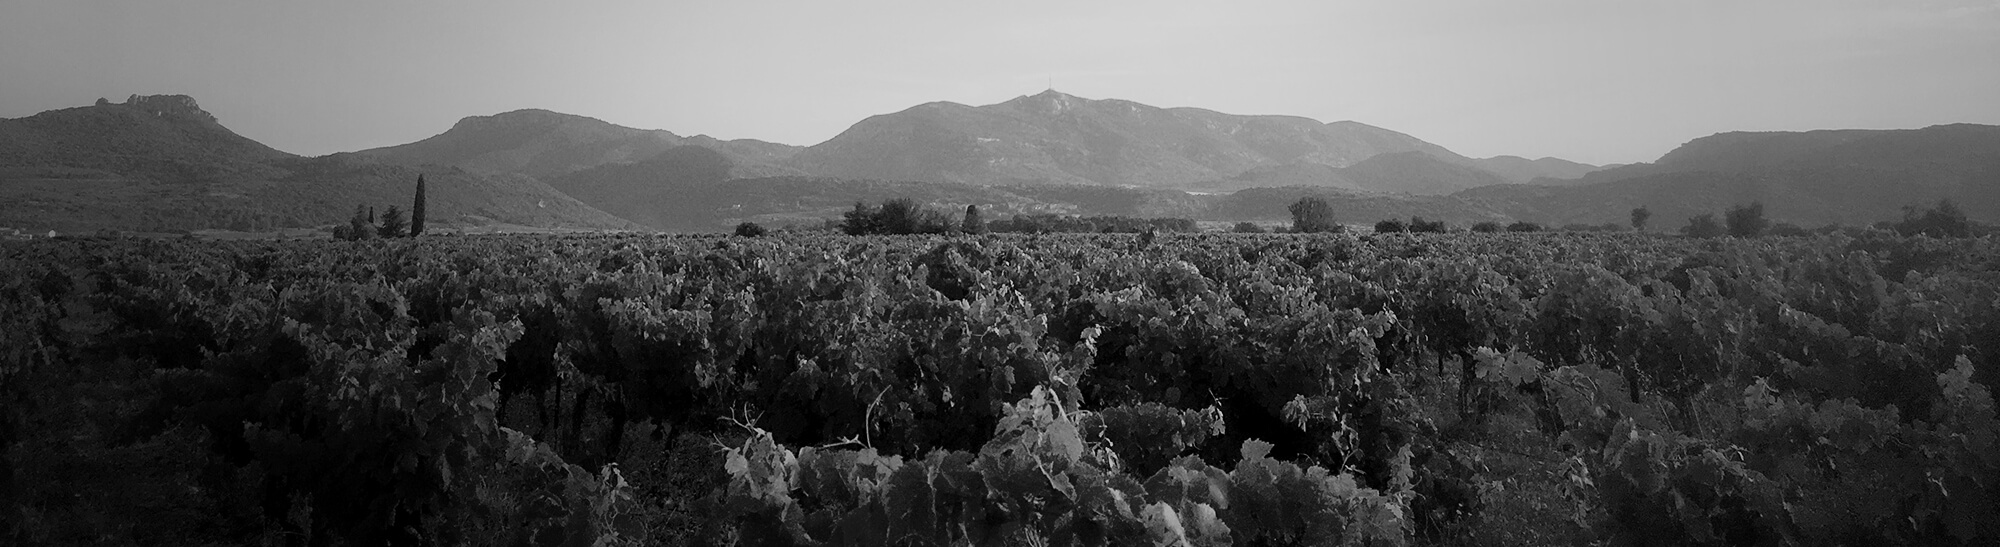 La Petite Parcelle - Romain Portier, vigneron - Production de vin d'AOC Terrasses-du-larzac, Languedoc.